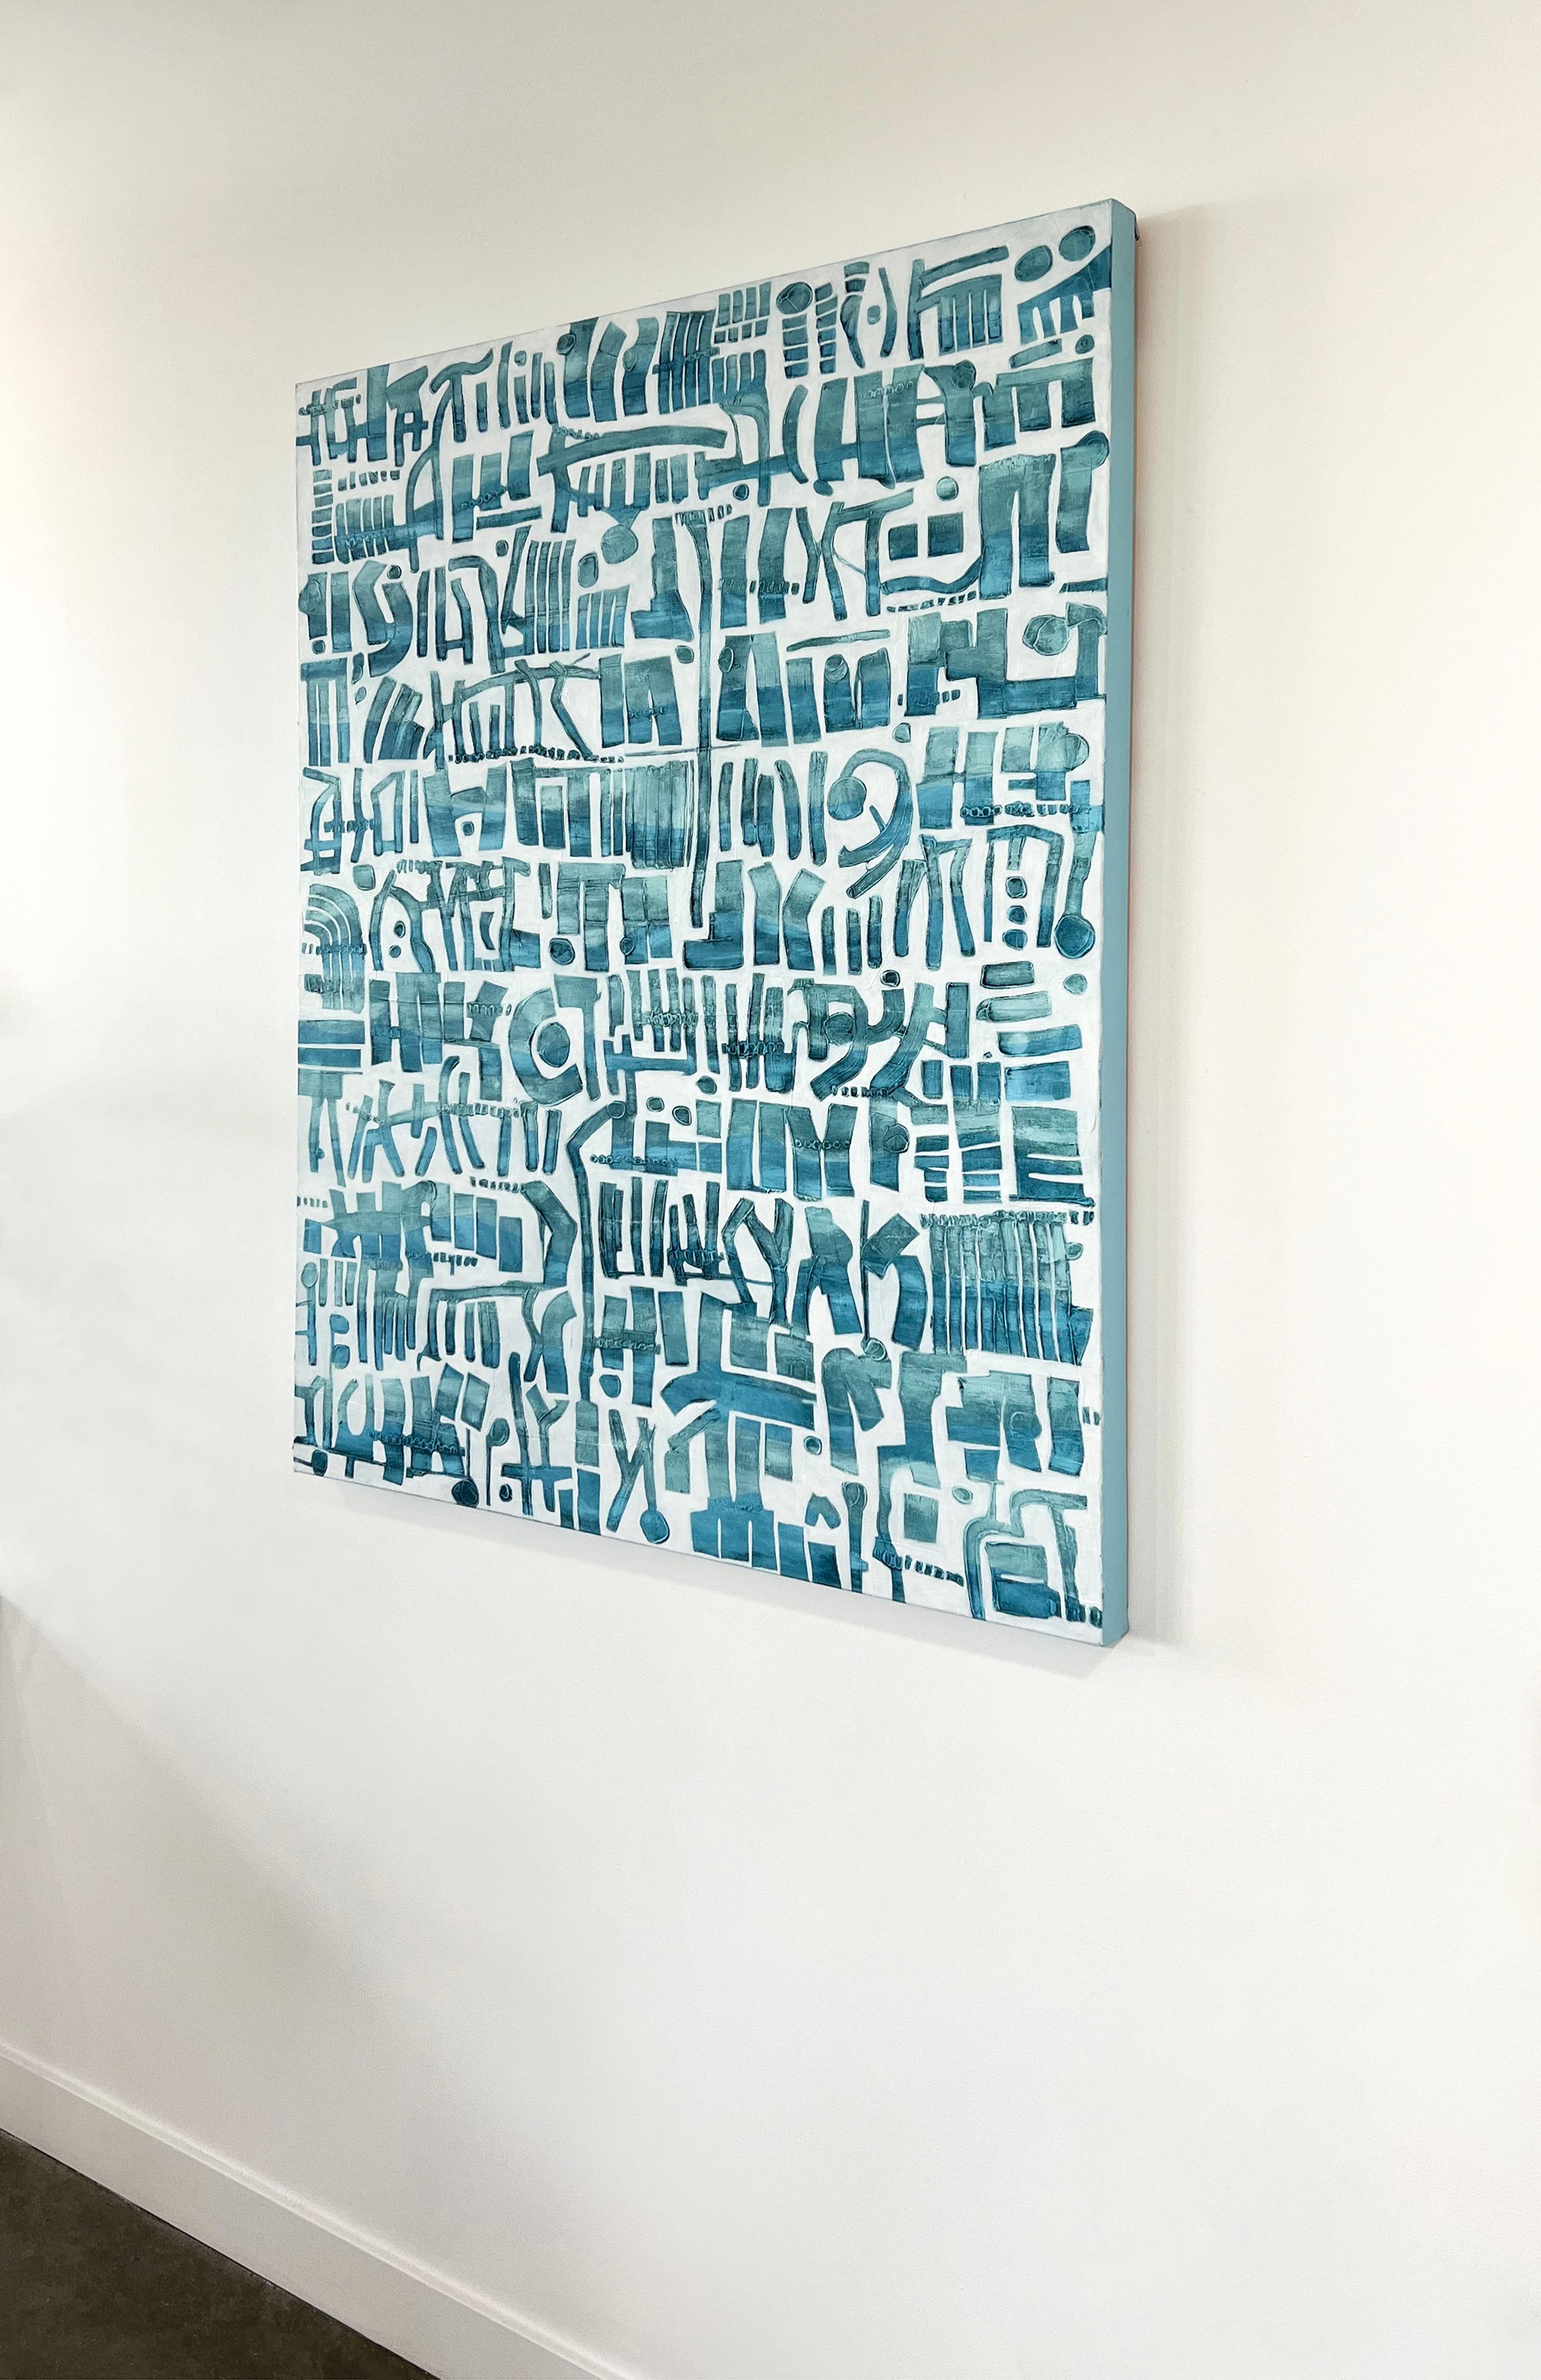 Cette grande peinture abstraite de Sofie Swann est réalisée avec de la peinture acrylique sur une toile enveloppée d'une galerie. Il présente une palette claire et côtière, avec des formes organiques bleues à motifs et empilées les unes aux autres